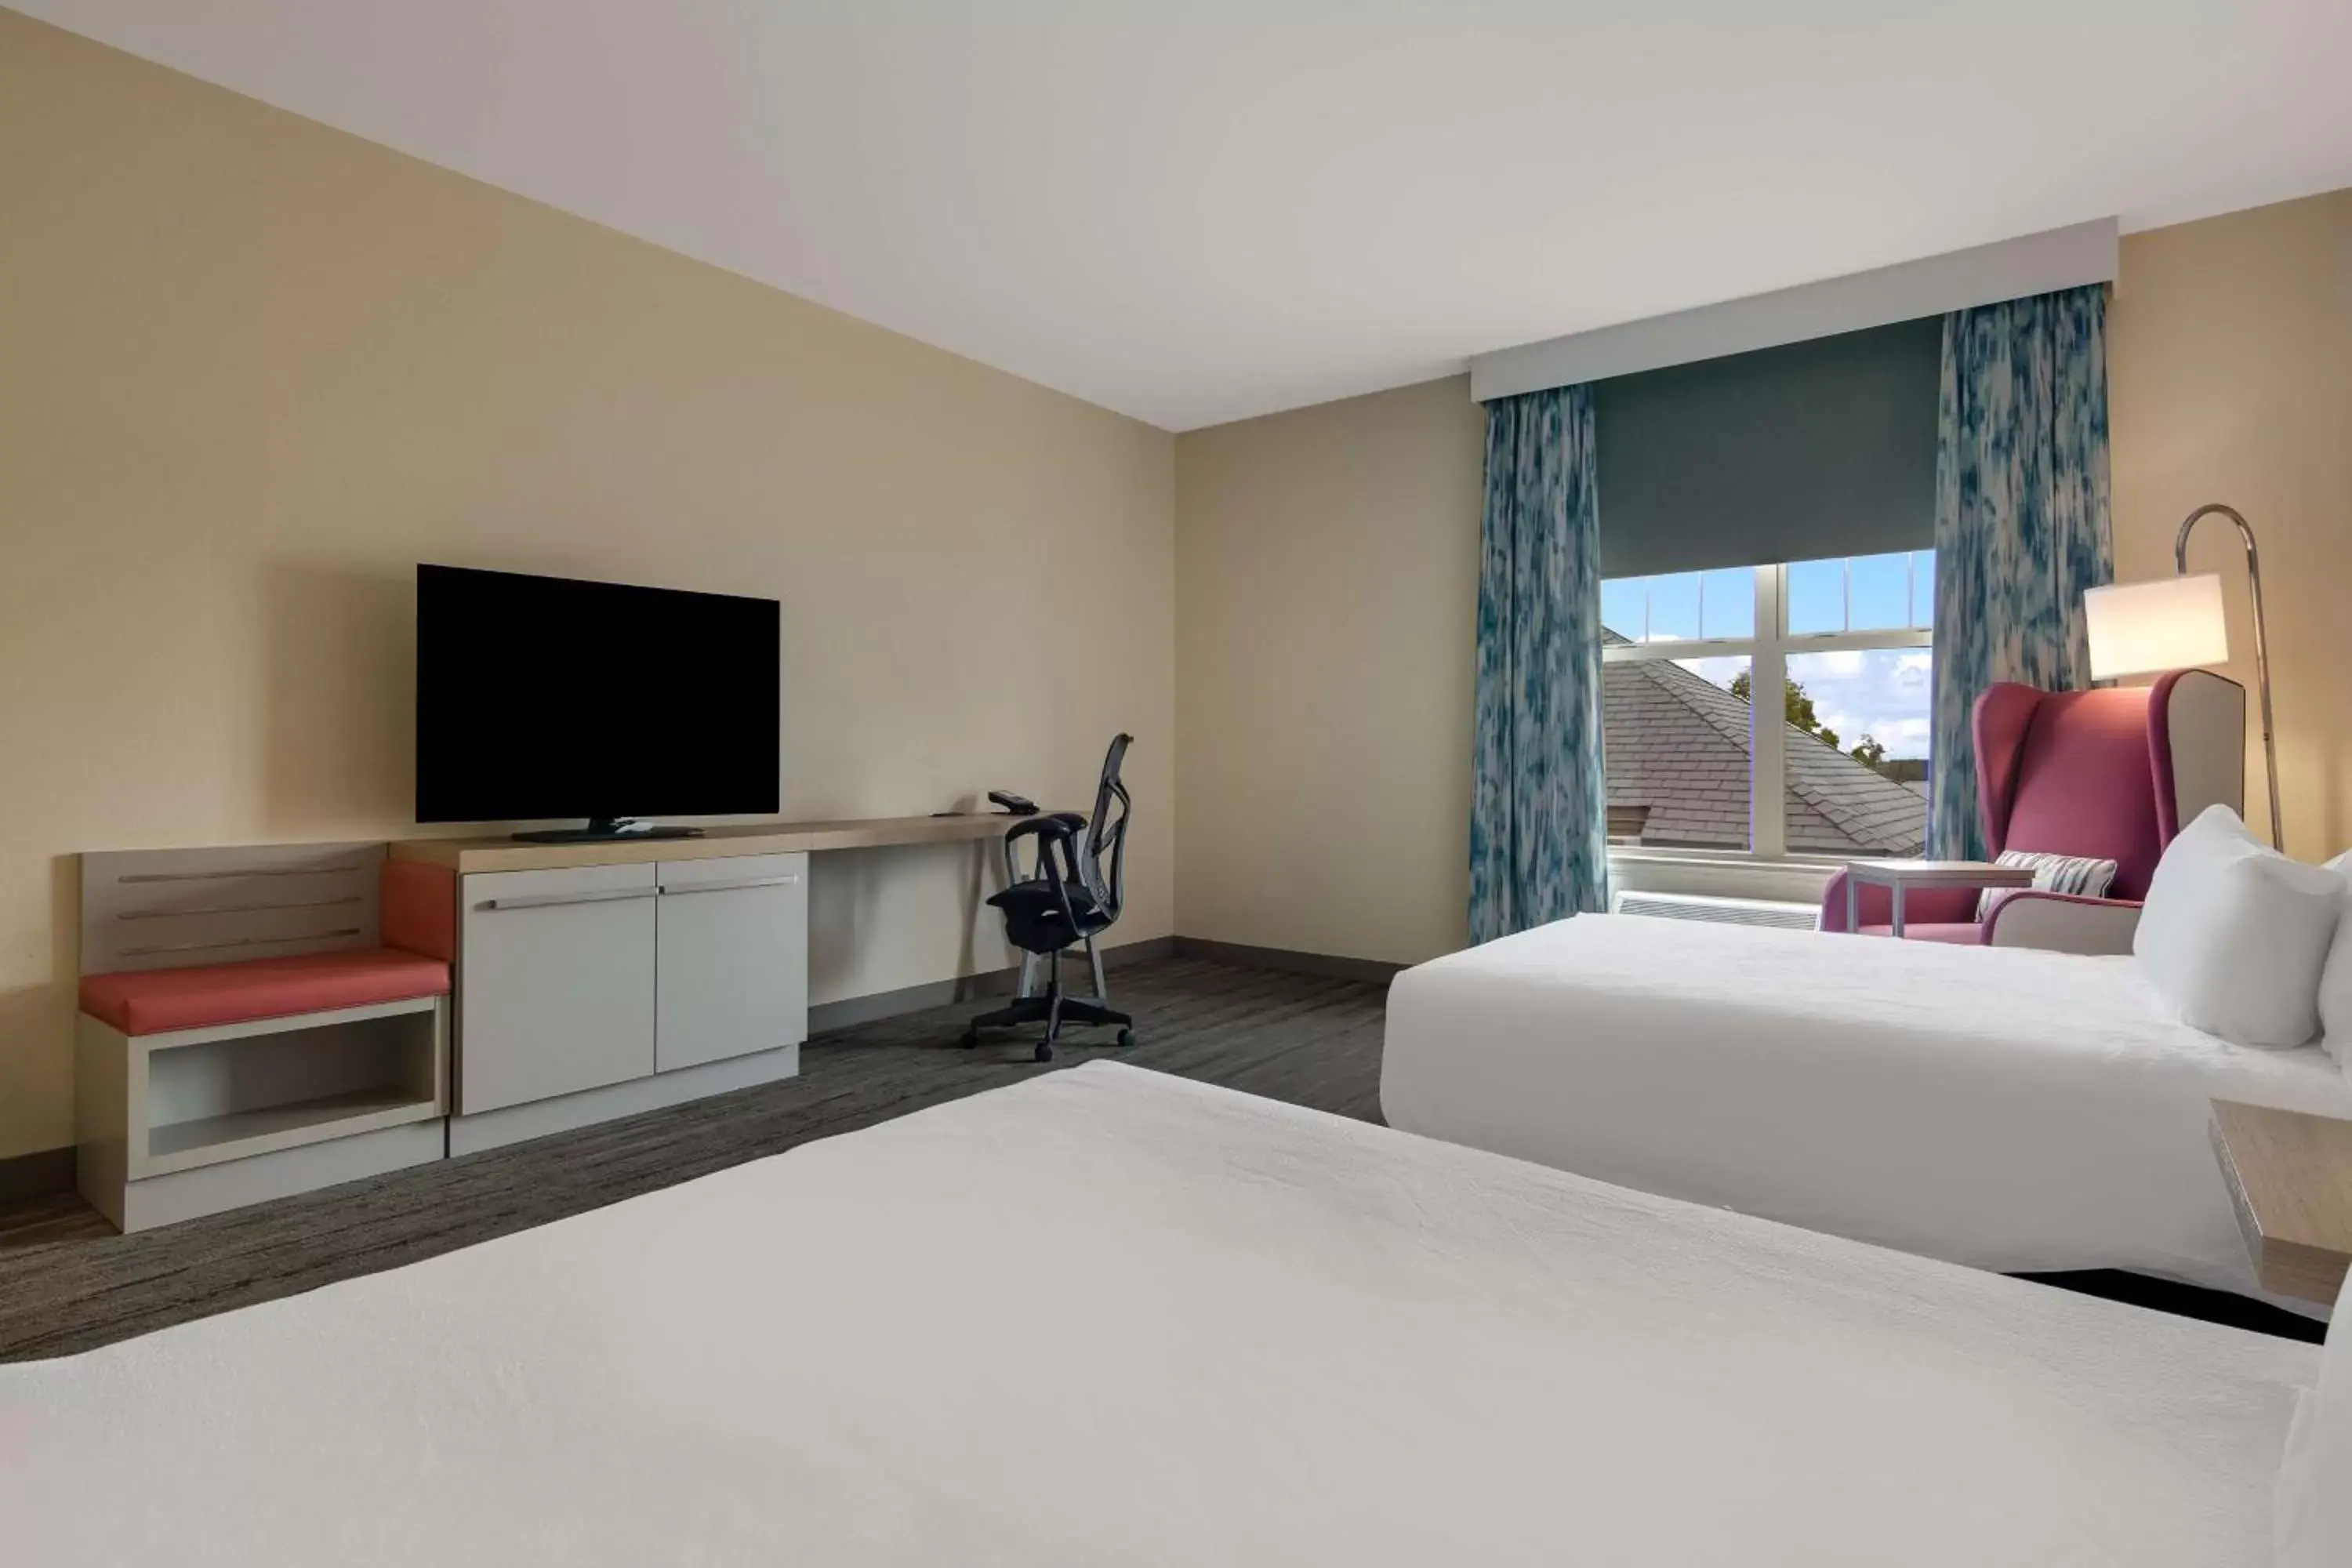 Bedroom, TV/Entertainment Center in Hilton Garden Inn Madison West/Middleton